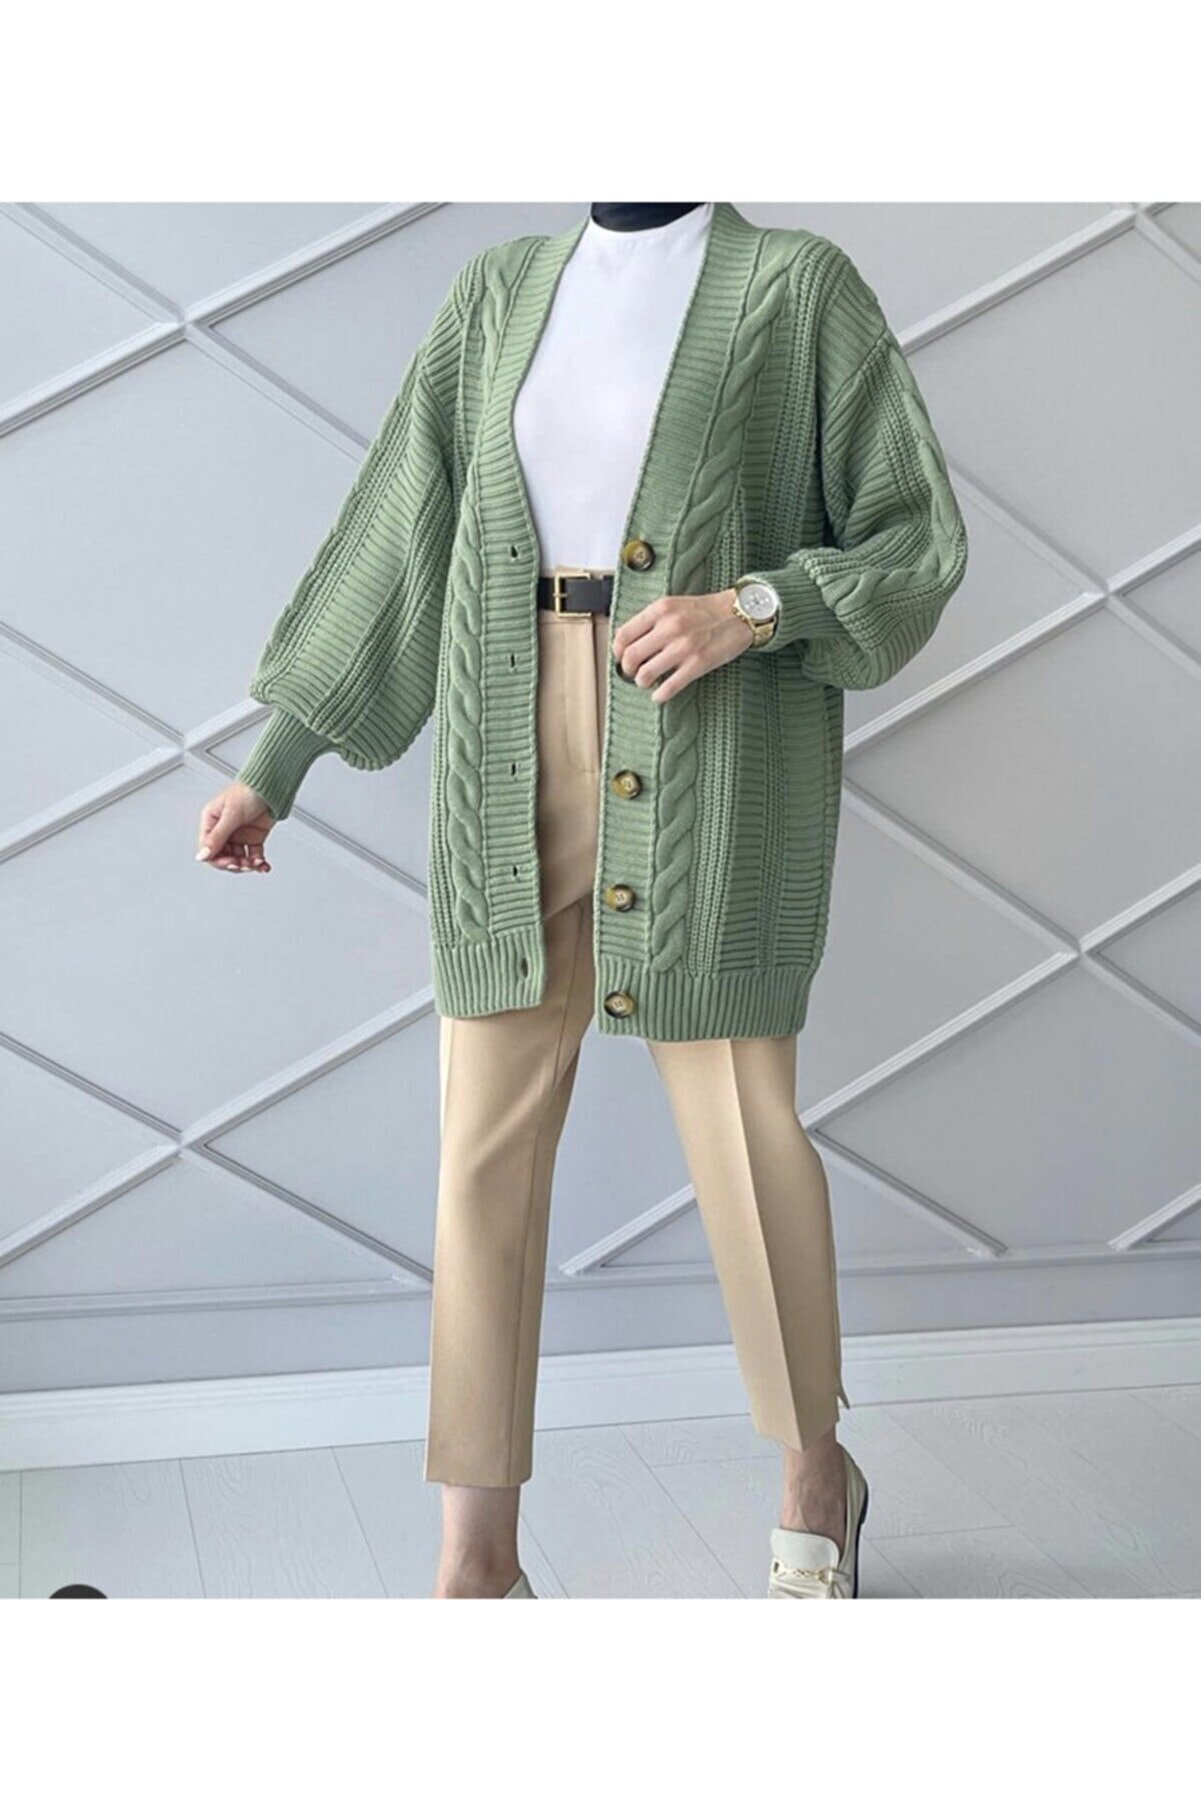 Papatya Giyim İzmit Kadın Mint Yeşili Kışlık Triko Hırka